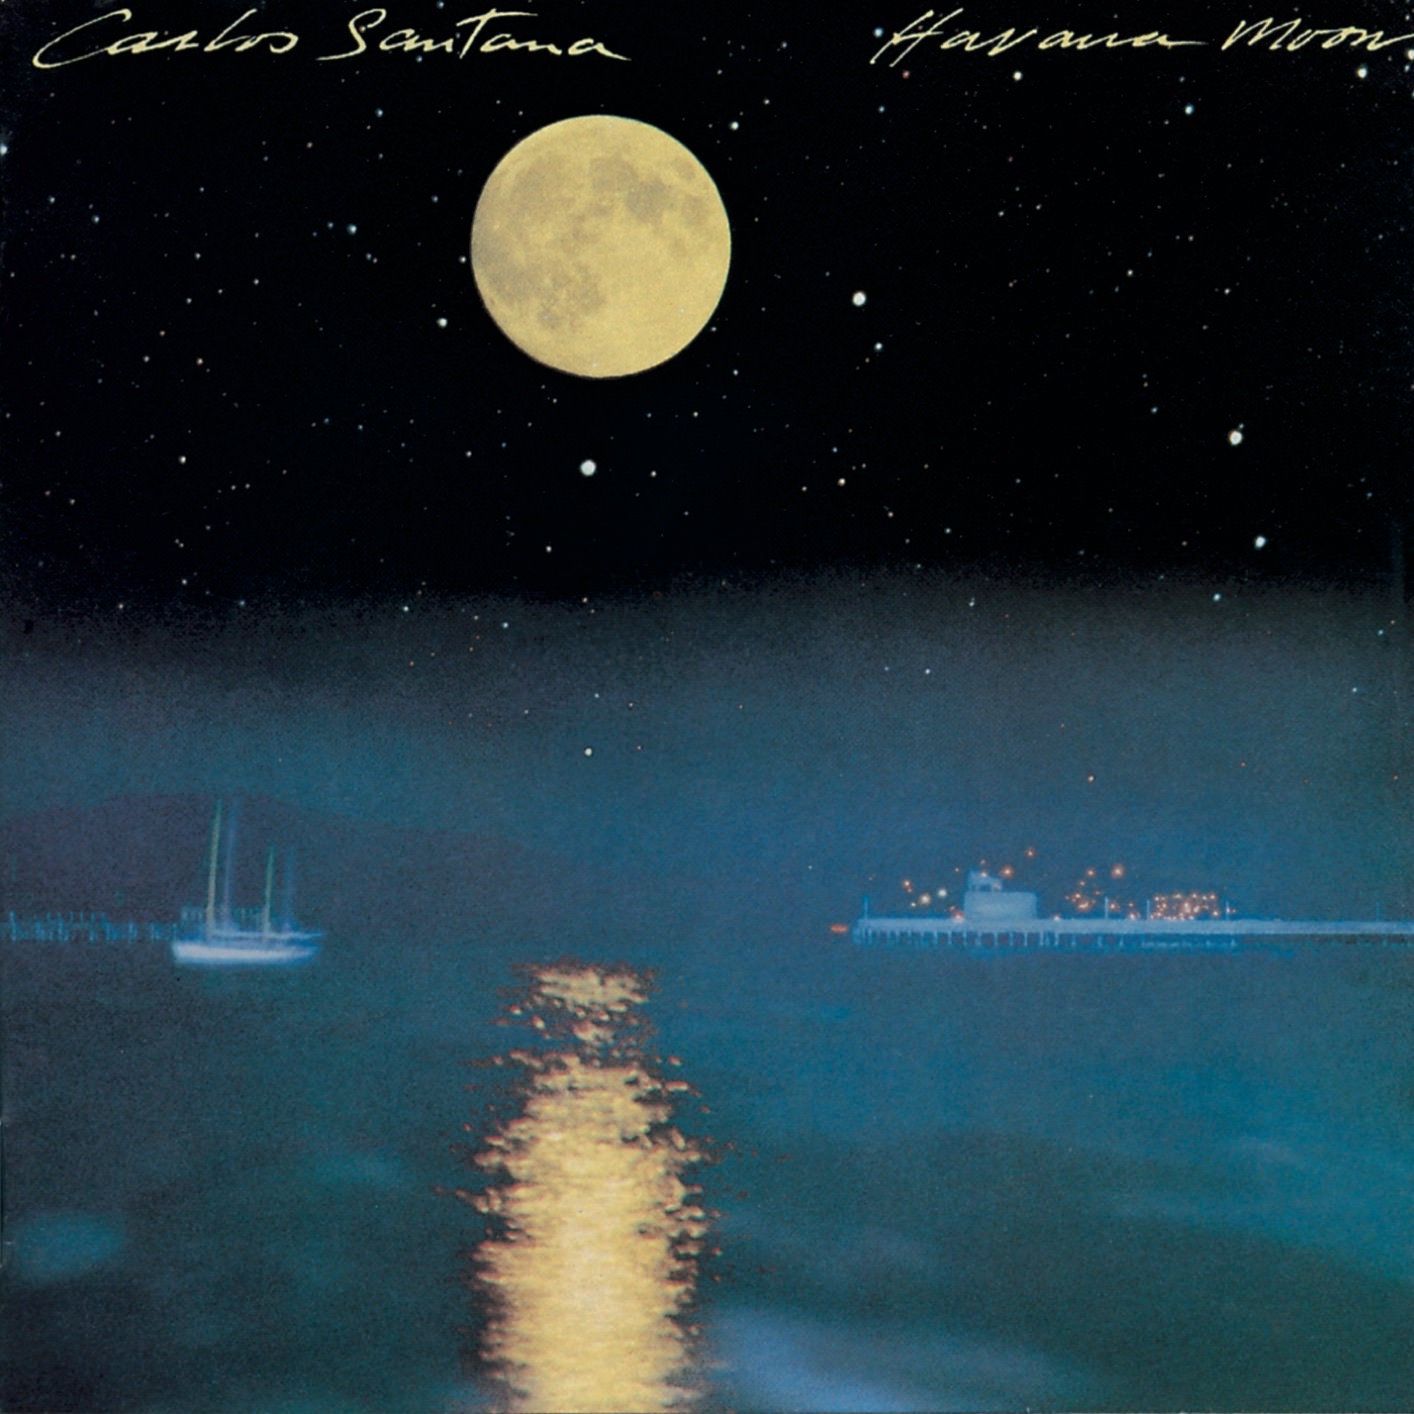 Carlos Santana - Havana Moon (1983/1988/2018) [HDTracks FLAC 24bit/192kHz]